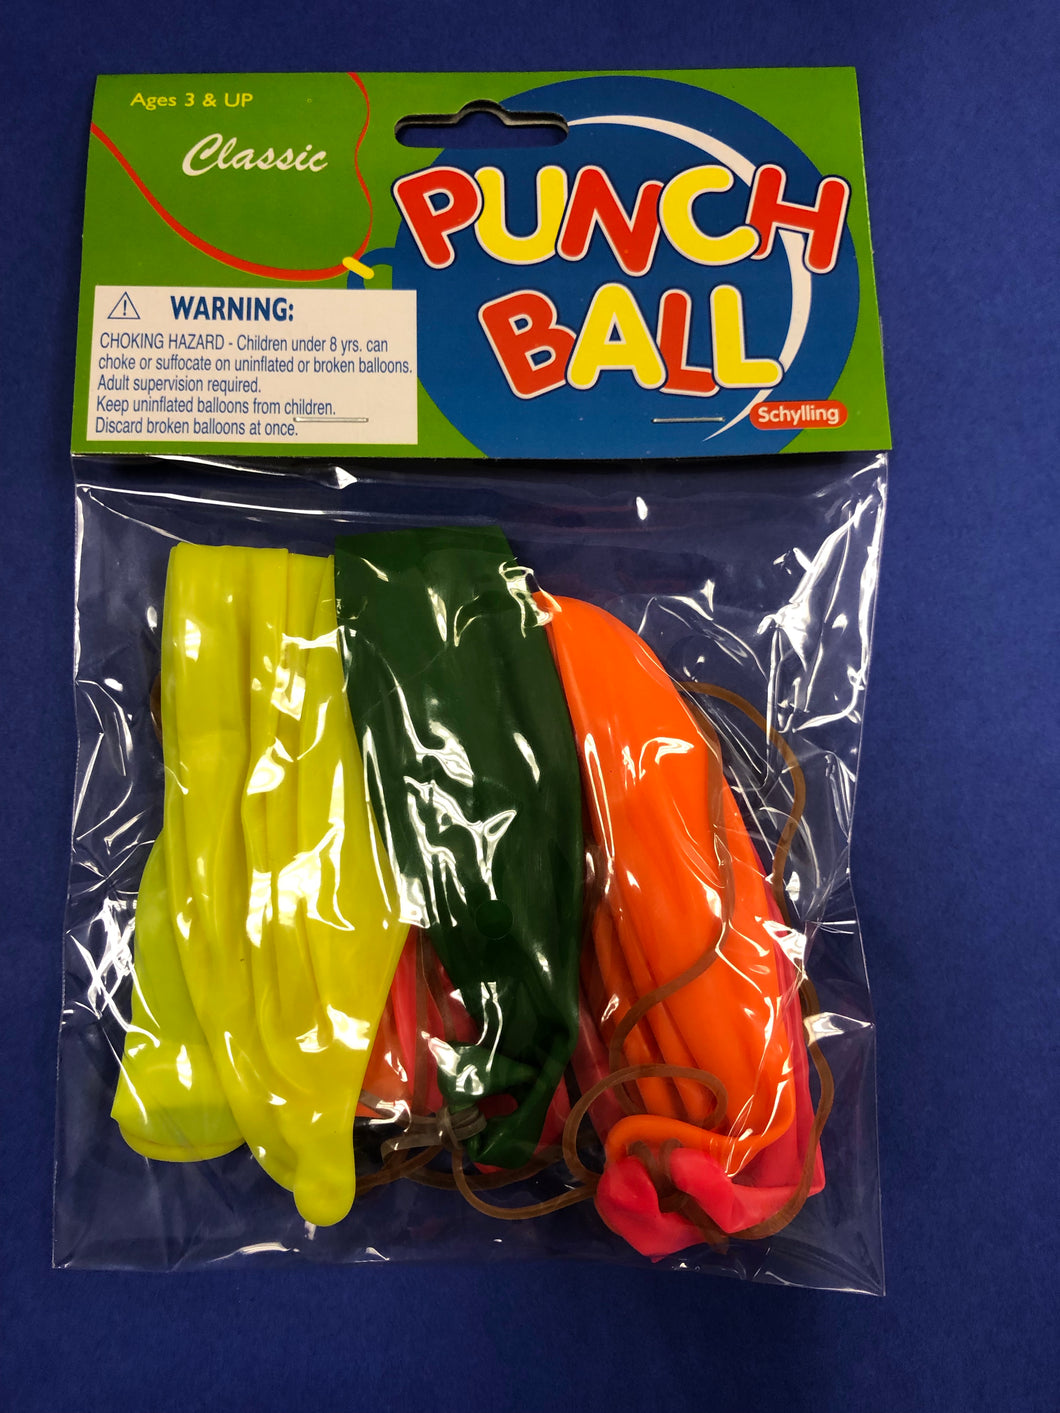 Punch Ball balloons